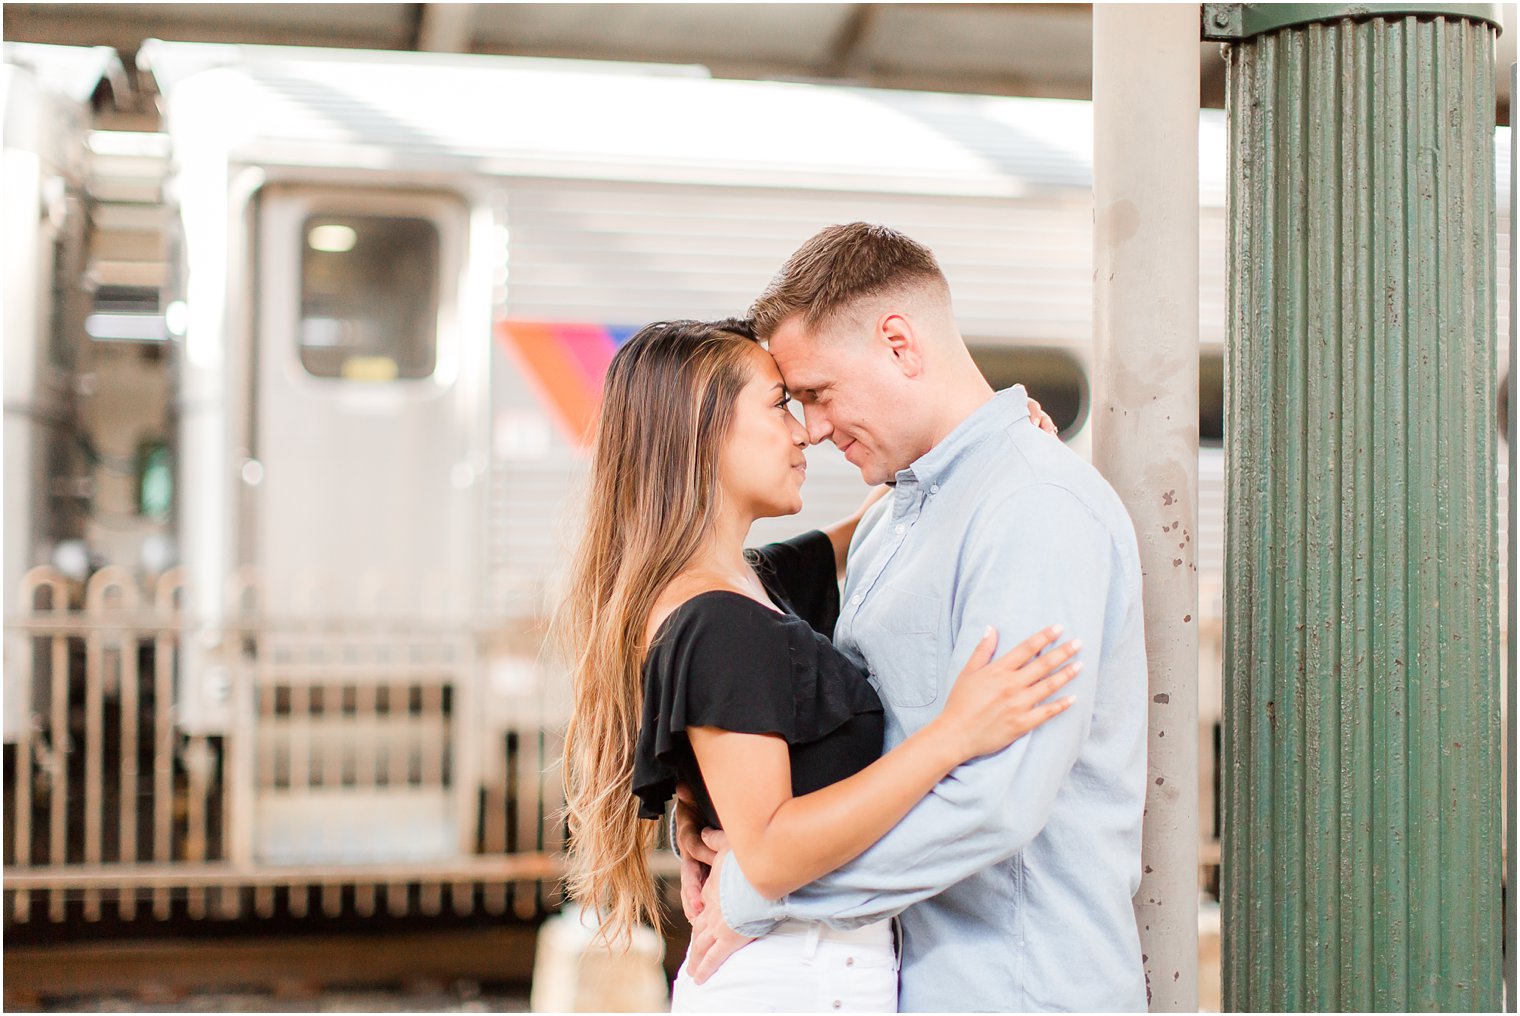 Romantic engagement photos in Hoboken